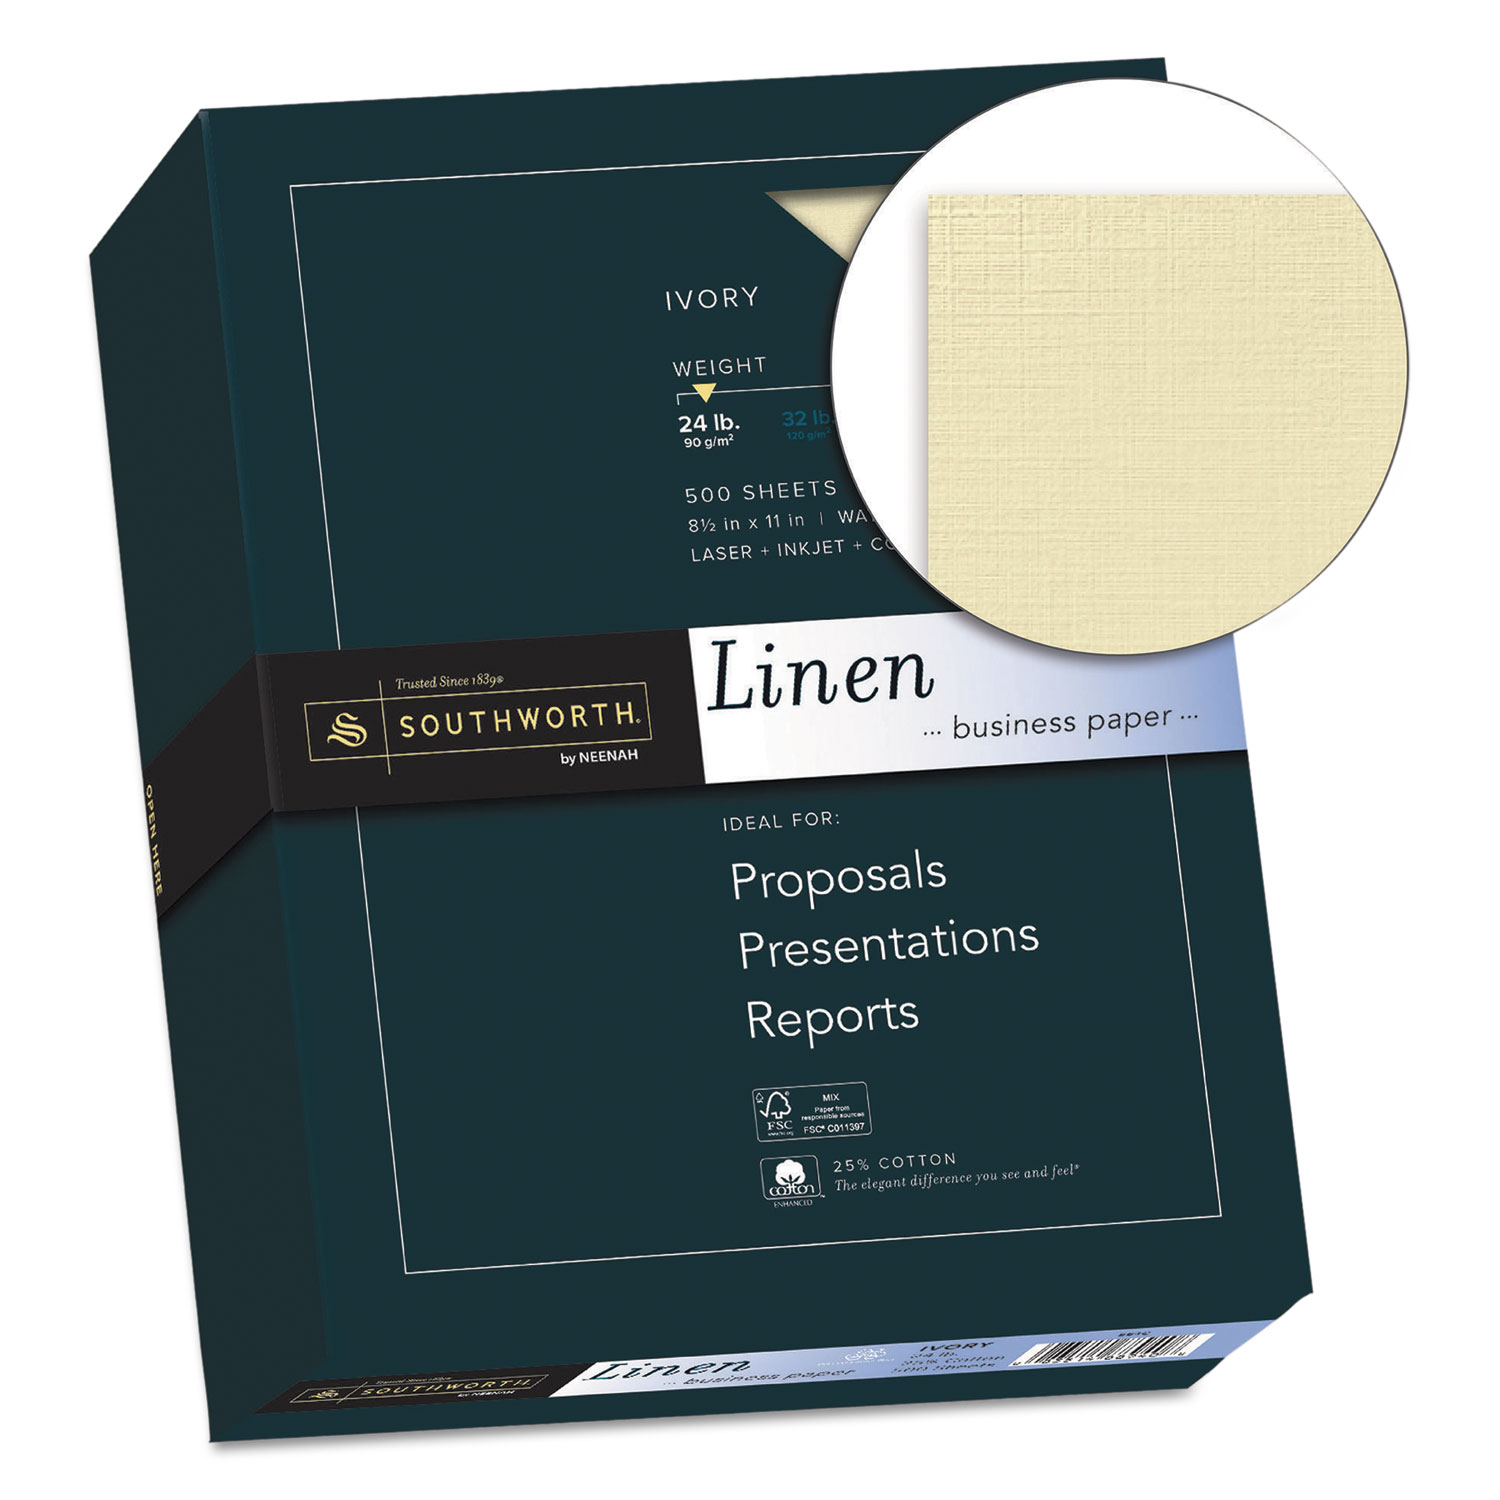 25% Cotton Linen Business Paper, Ivory, 24lb, 8 1/2 x 11, 500 Sheets